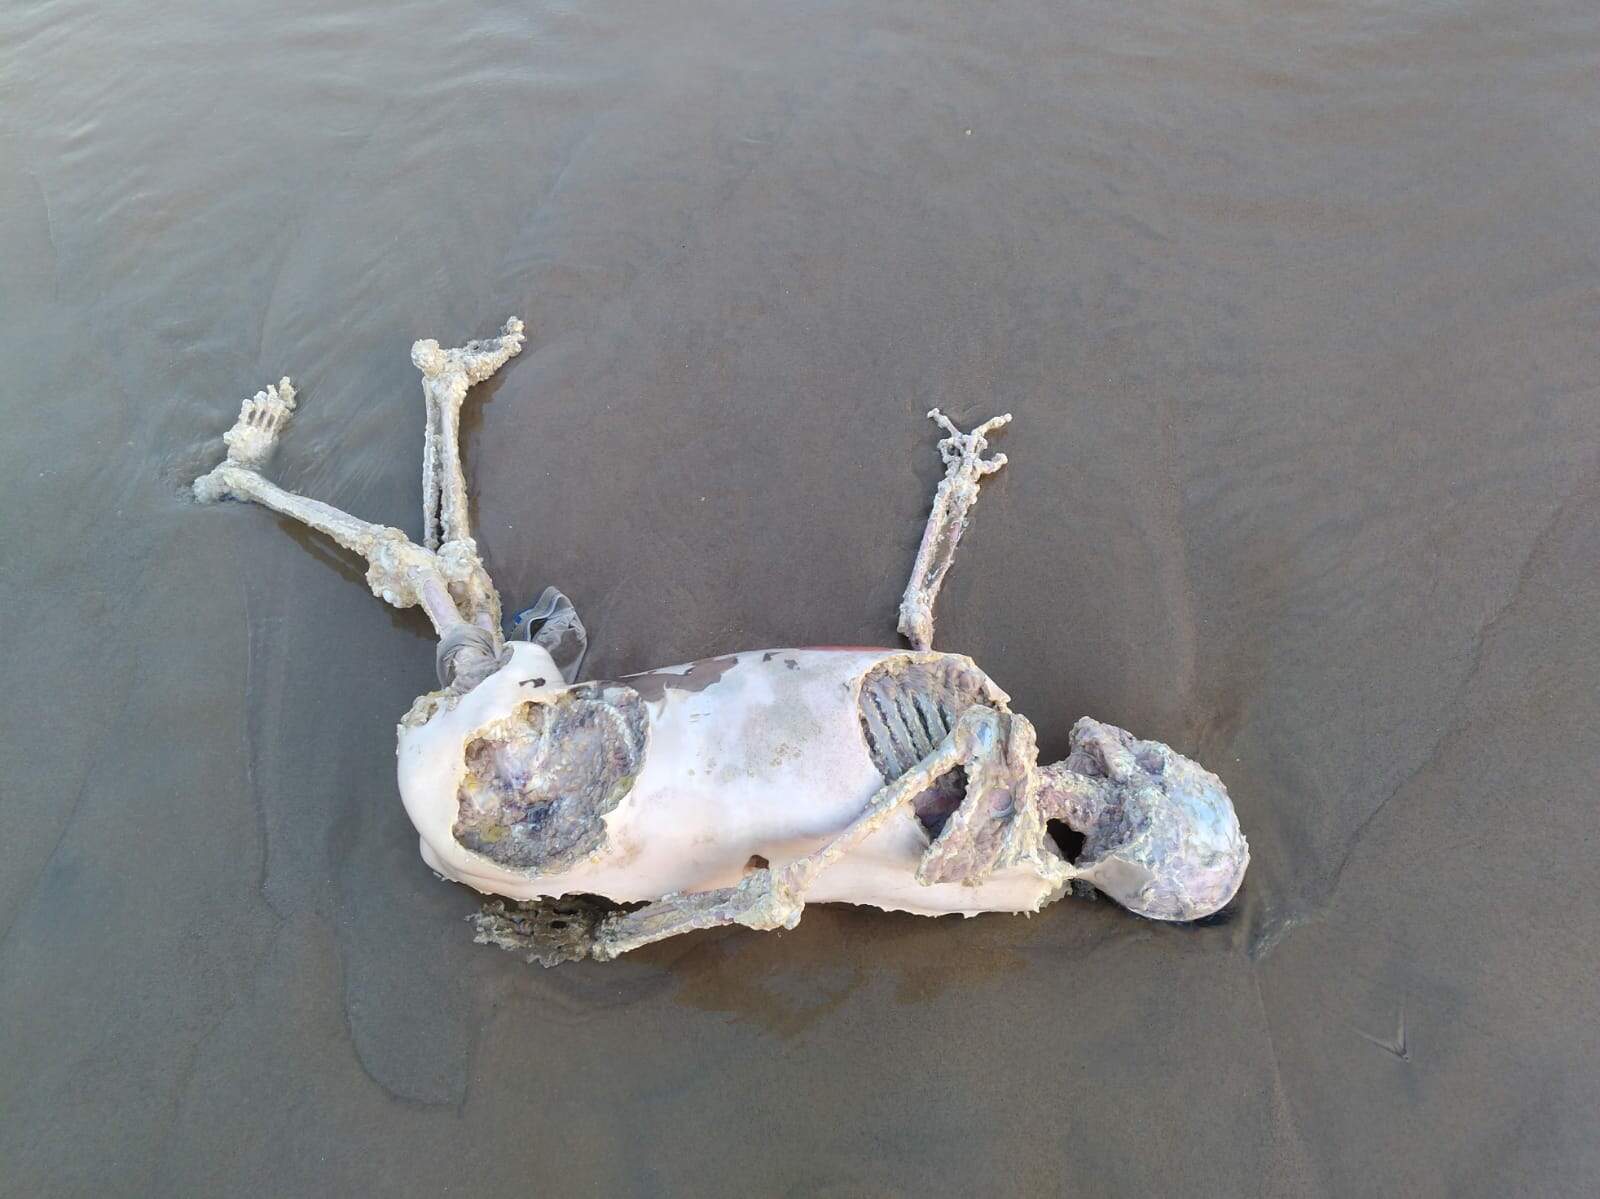 Corpo com ossada exposta foi visto em praia de Itanhaém, no litoral sul